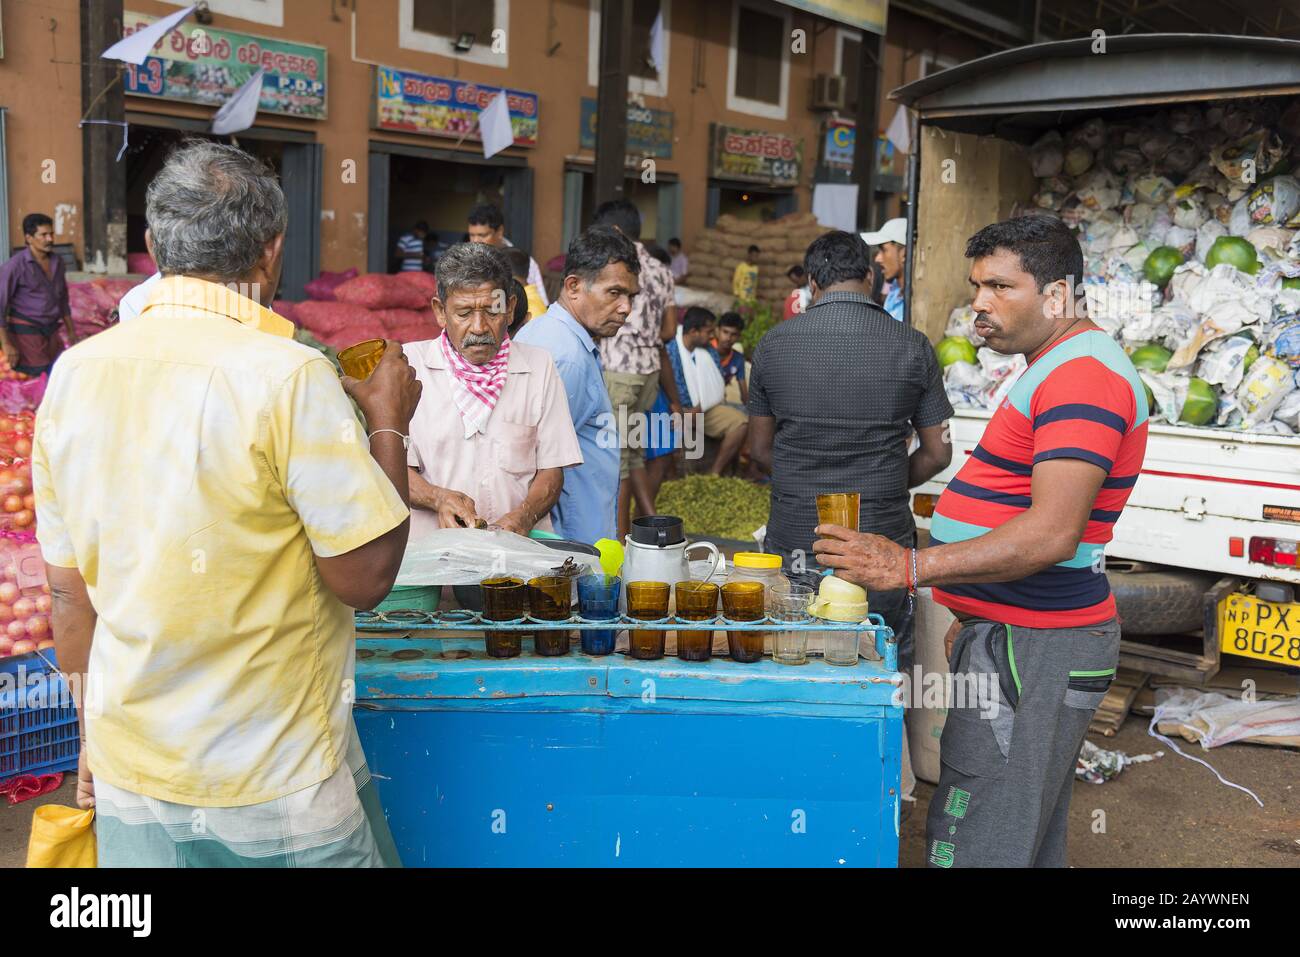 Dambulla, Sri Lanka: 18.03.2019: Im Obst- und Gemüsemarkt. Männer, die Erfrischungen, Tee und Kaffee verkaufen. Stockfoto